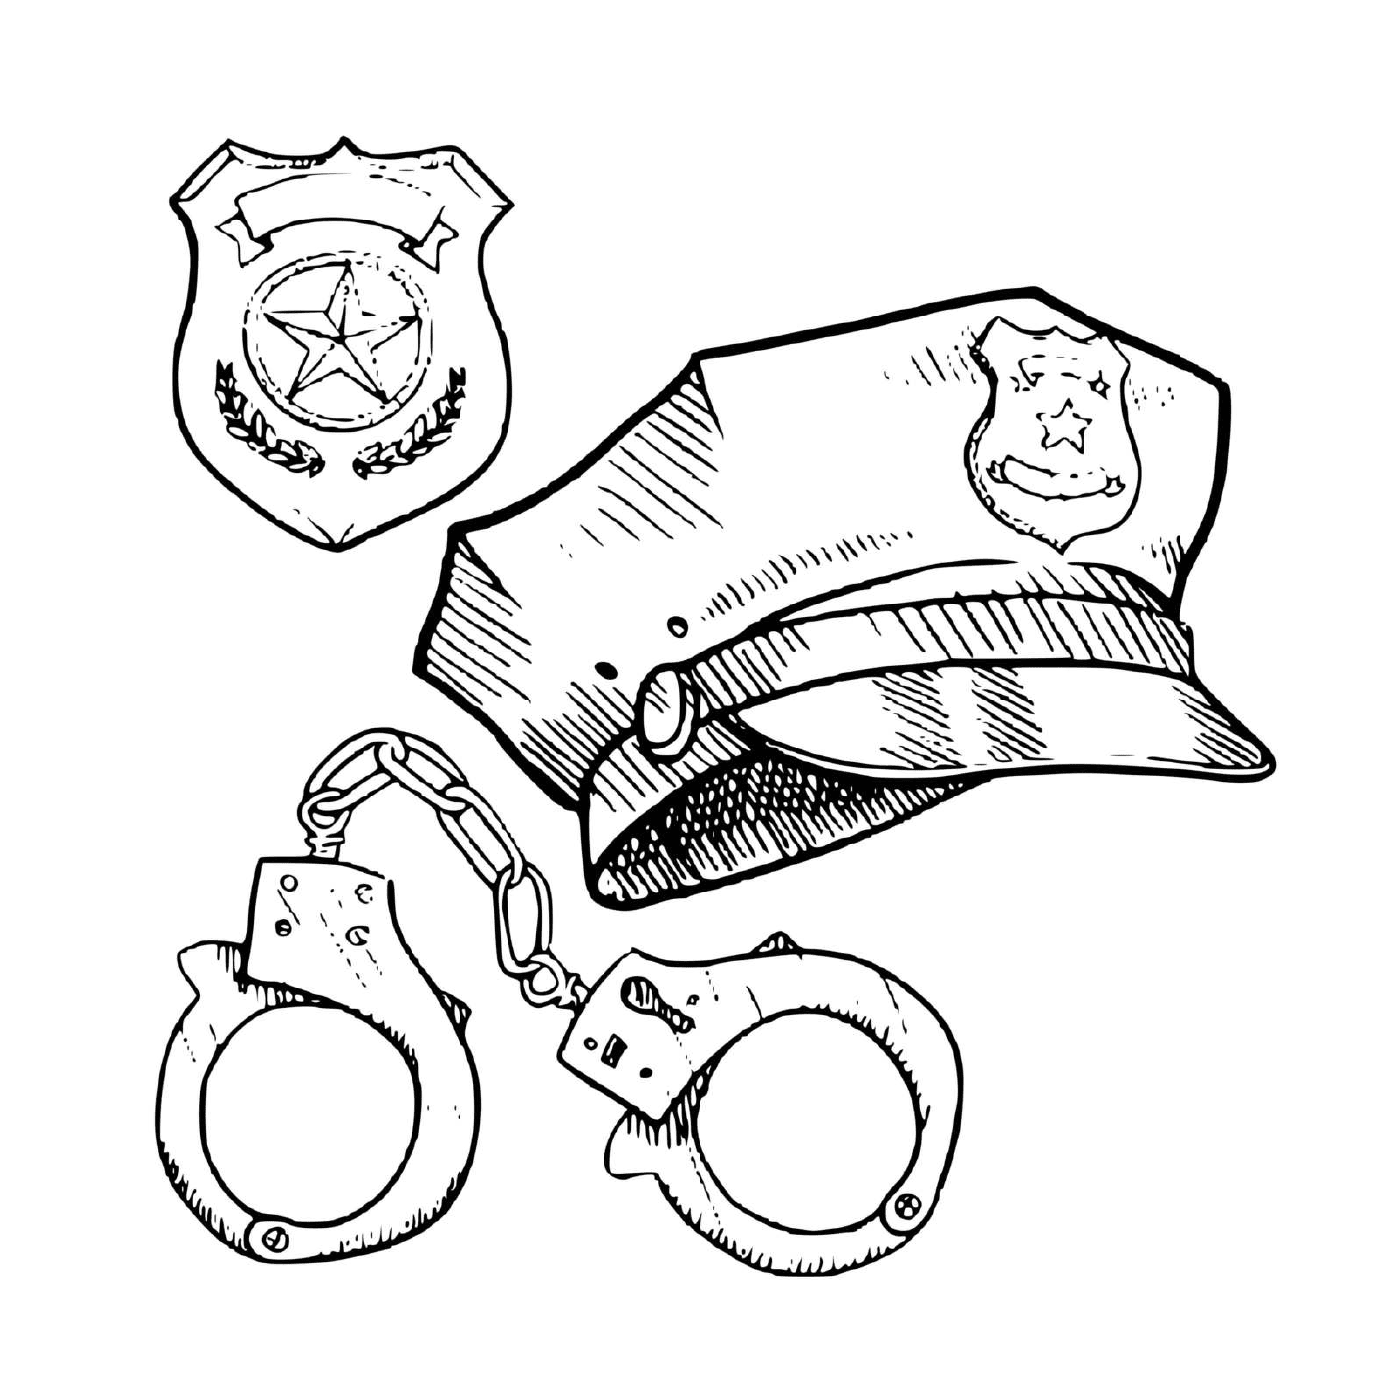  Polizeiausrüstung: Mütze, Handschellen 